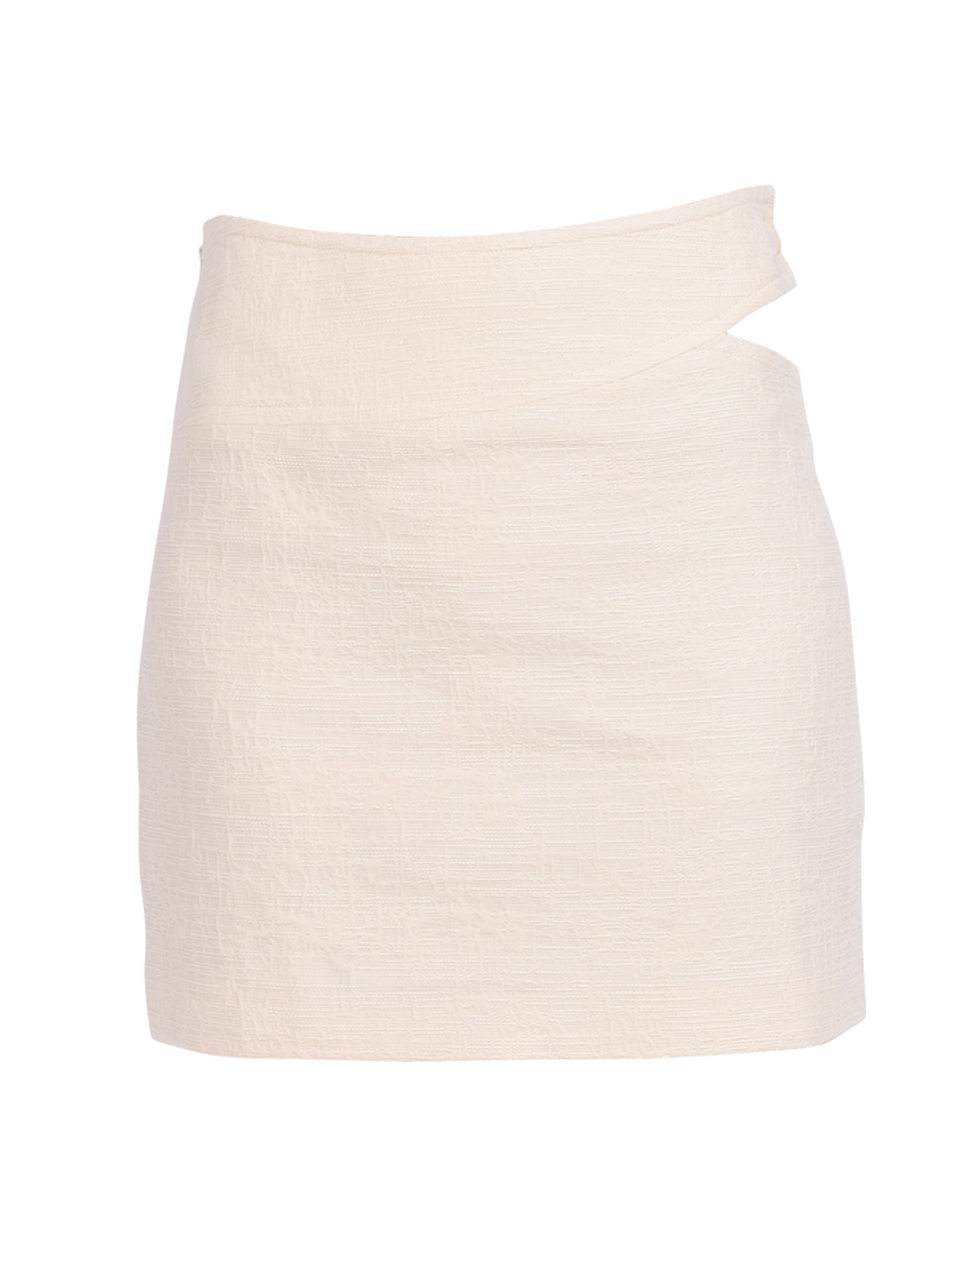 BA&SH Hola Skirt in Off White

